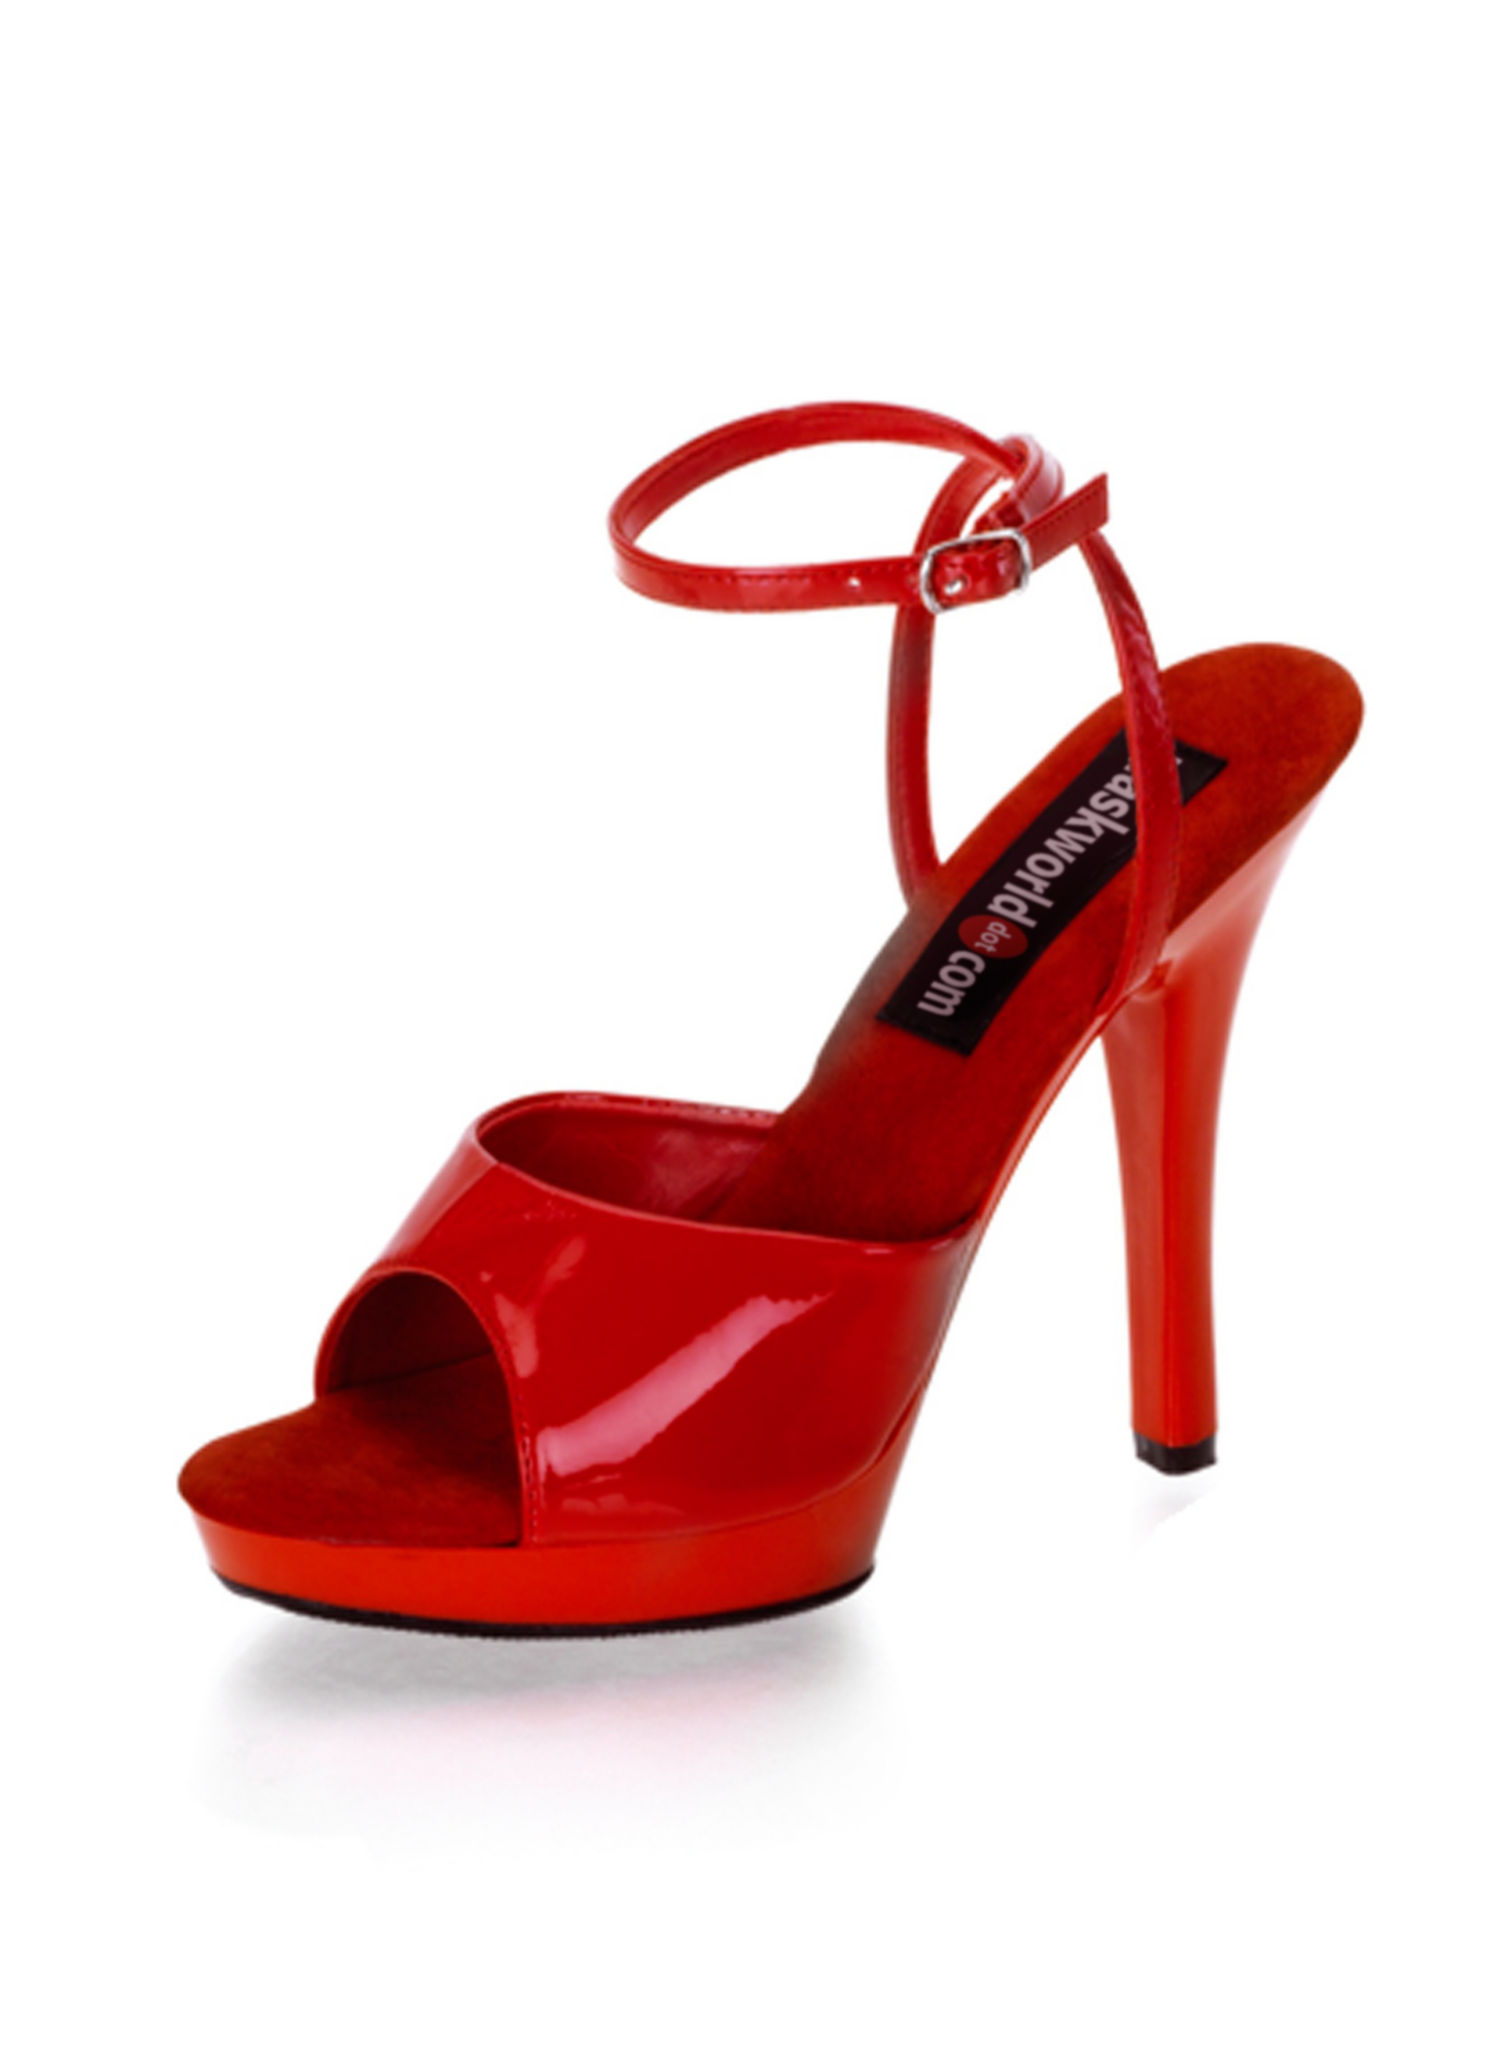 Weil's so schön war: 103995-sexy-sandaletten-rot-sandals-red?$thumbnew$